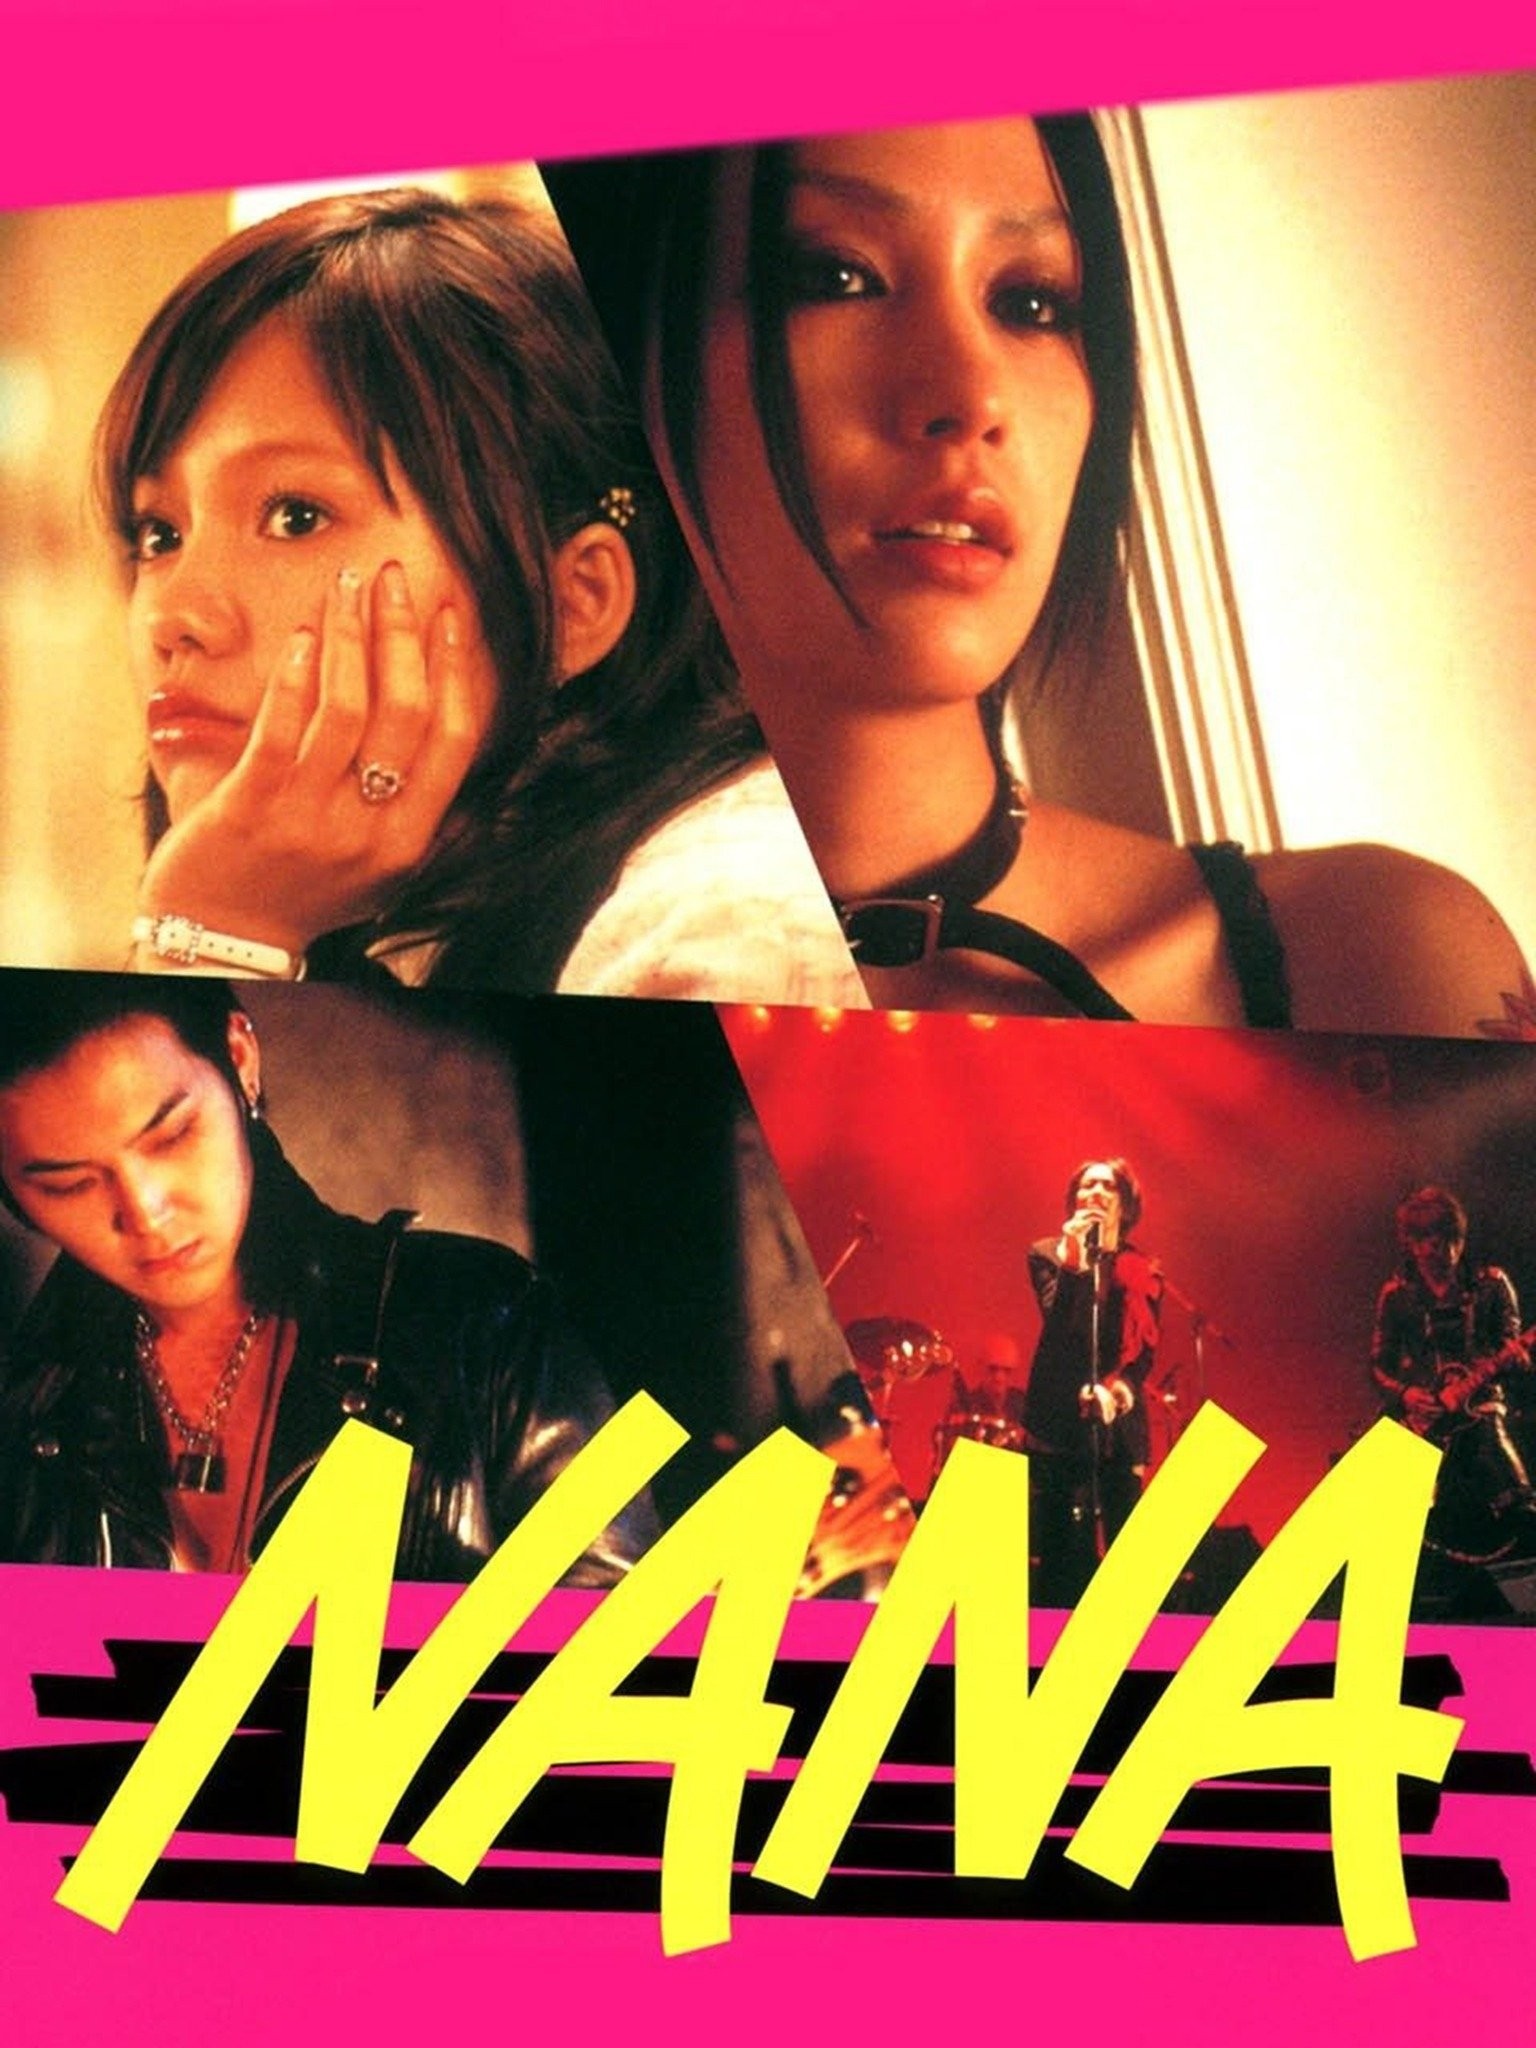 NANA Coming to Home Video February 2022